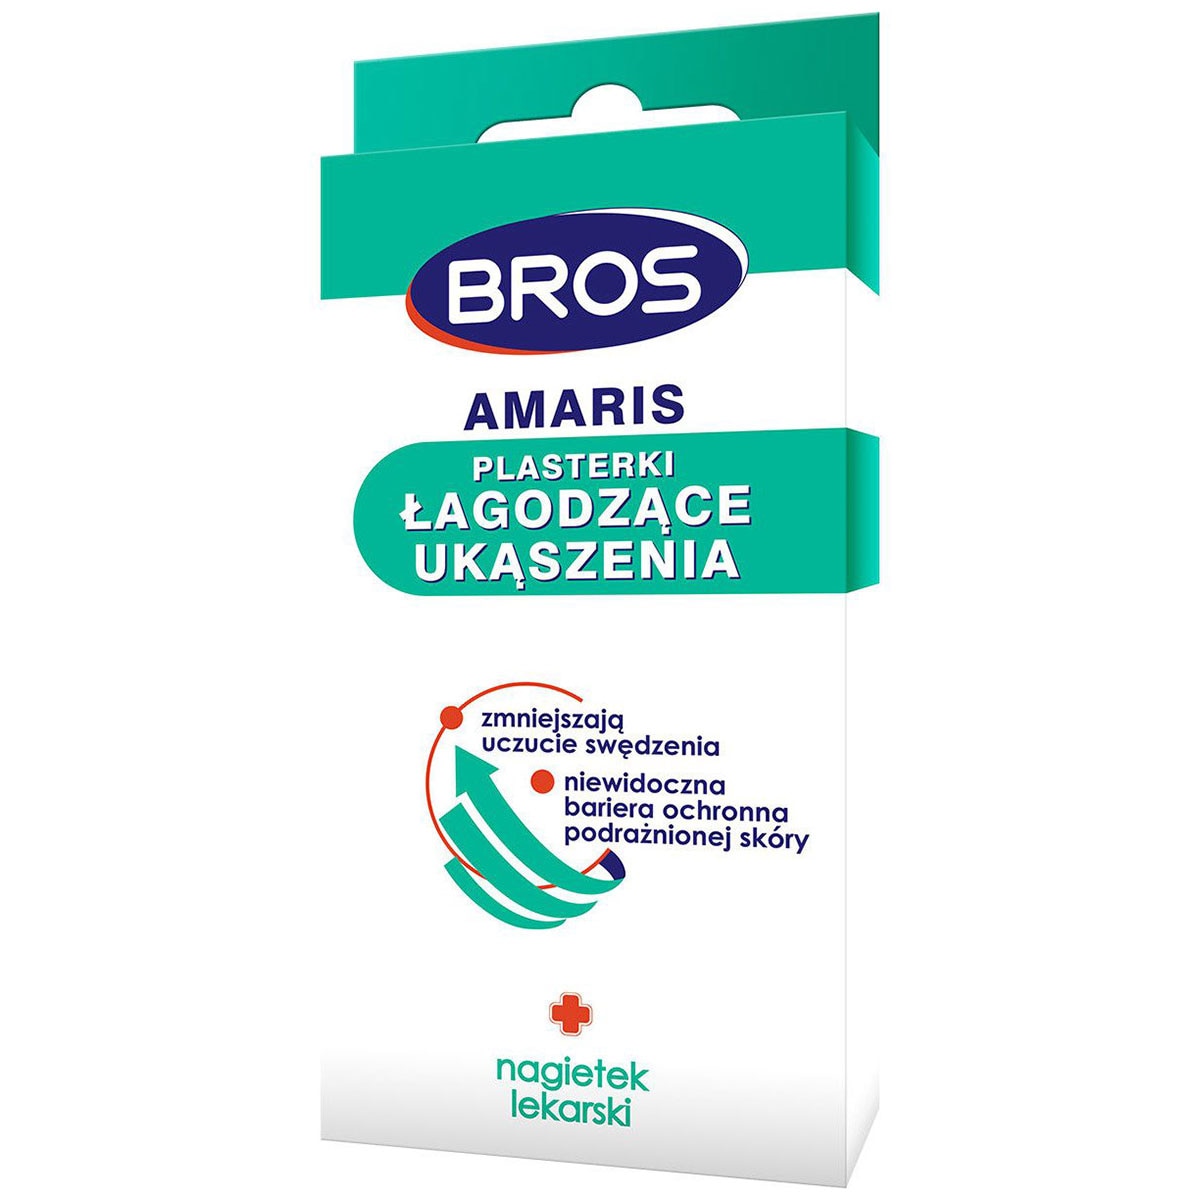 Пластир Bros Amaris для заспокоєння укусів комах - 20 шт.